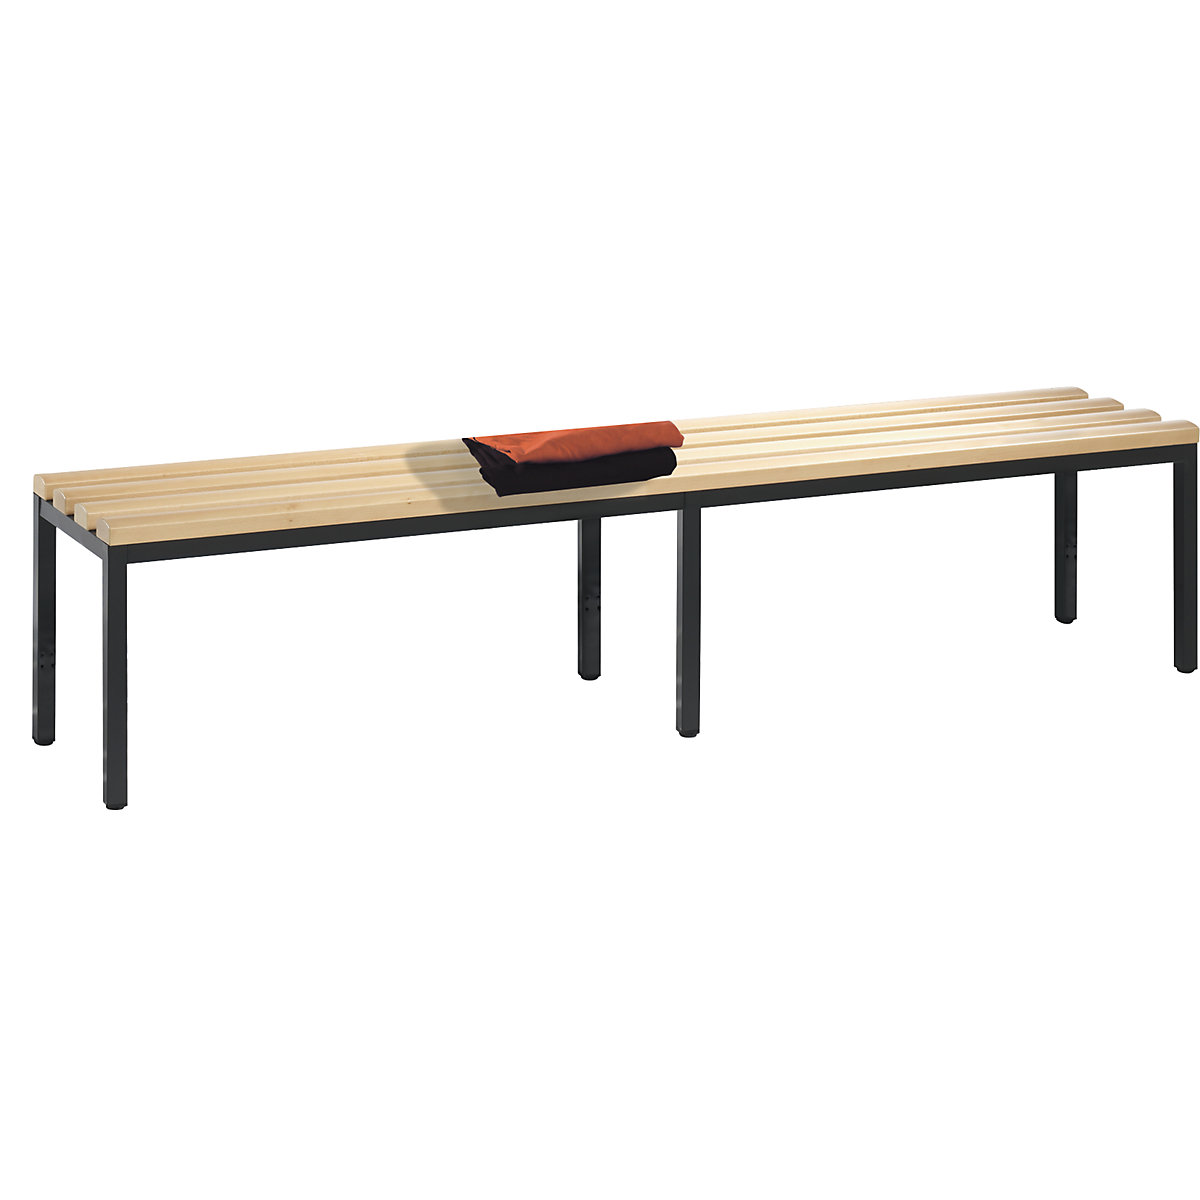 Šatňová lavica BASIC – C+P, bukové drevo, dĺžka 1960 mm-1